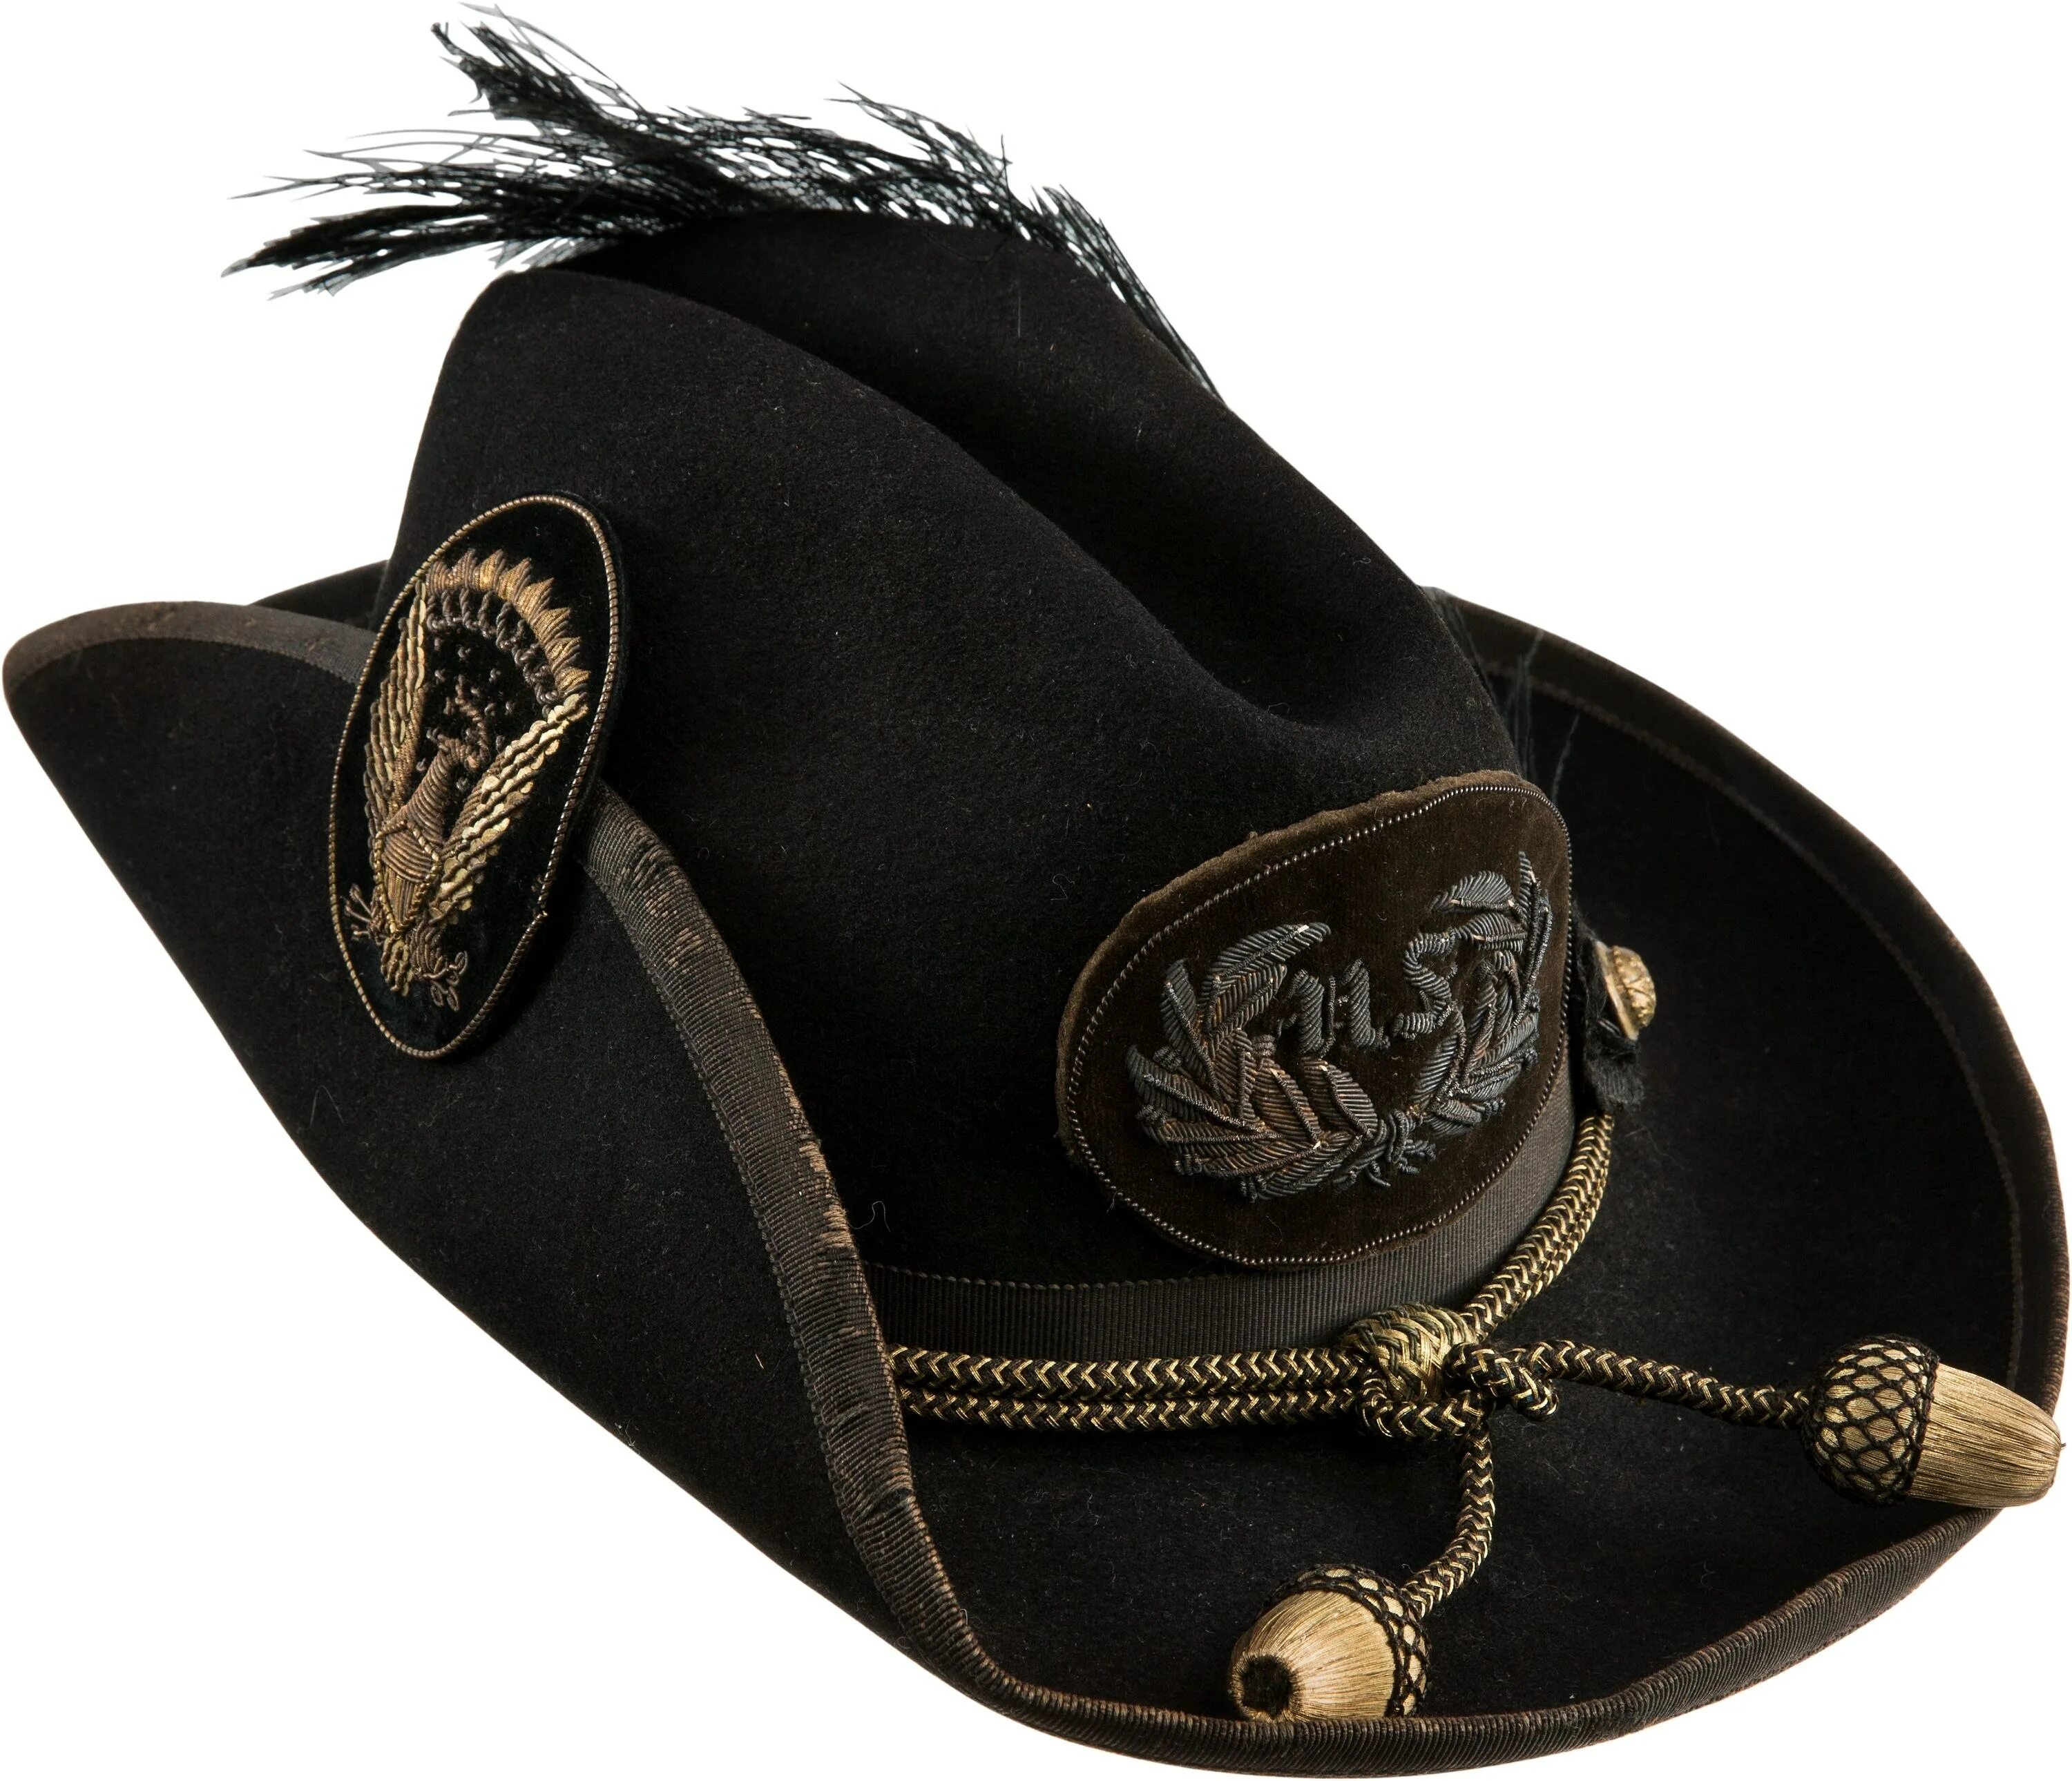 Кавалерийская шляпа Стетсон. Конфедератка Стетсон. Кавалерийская шляпа КША. Франция 16 век головные уборы треуголка. Шляпа войны